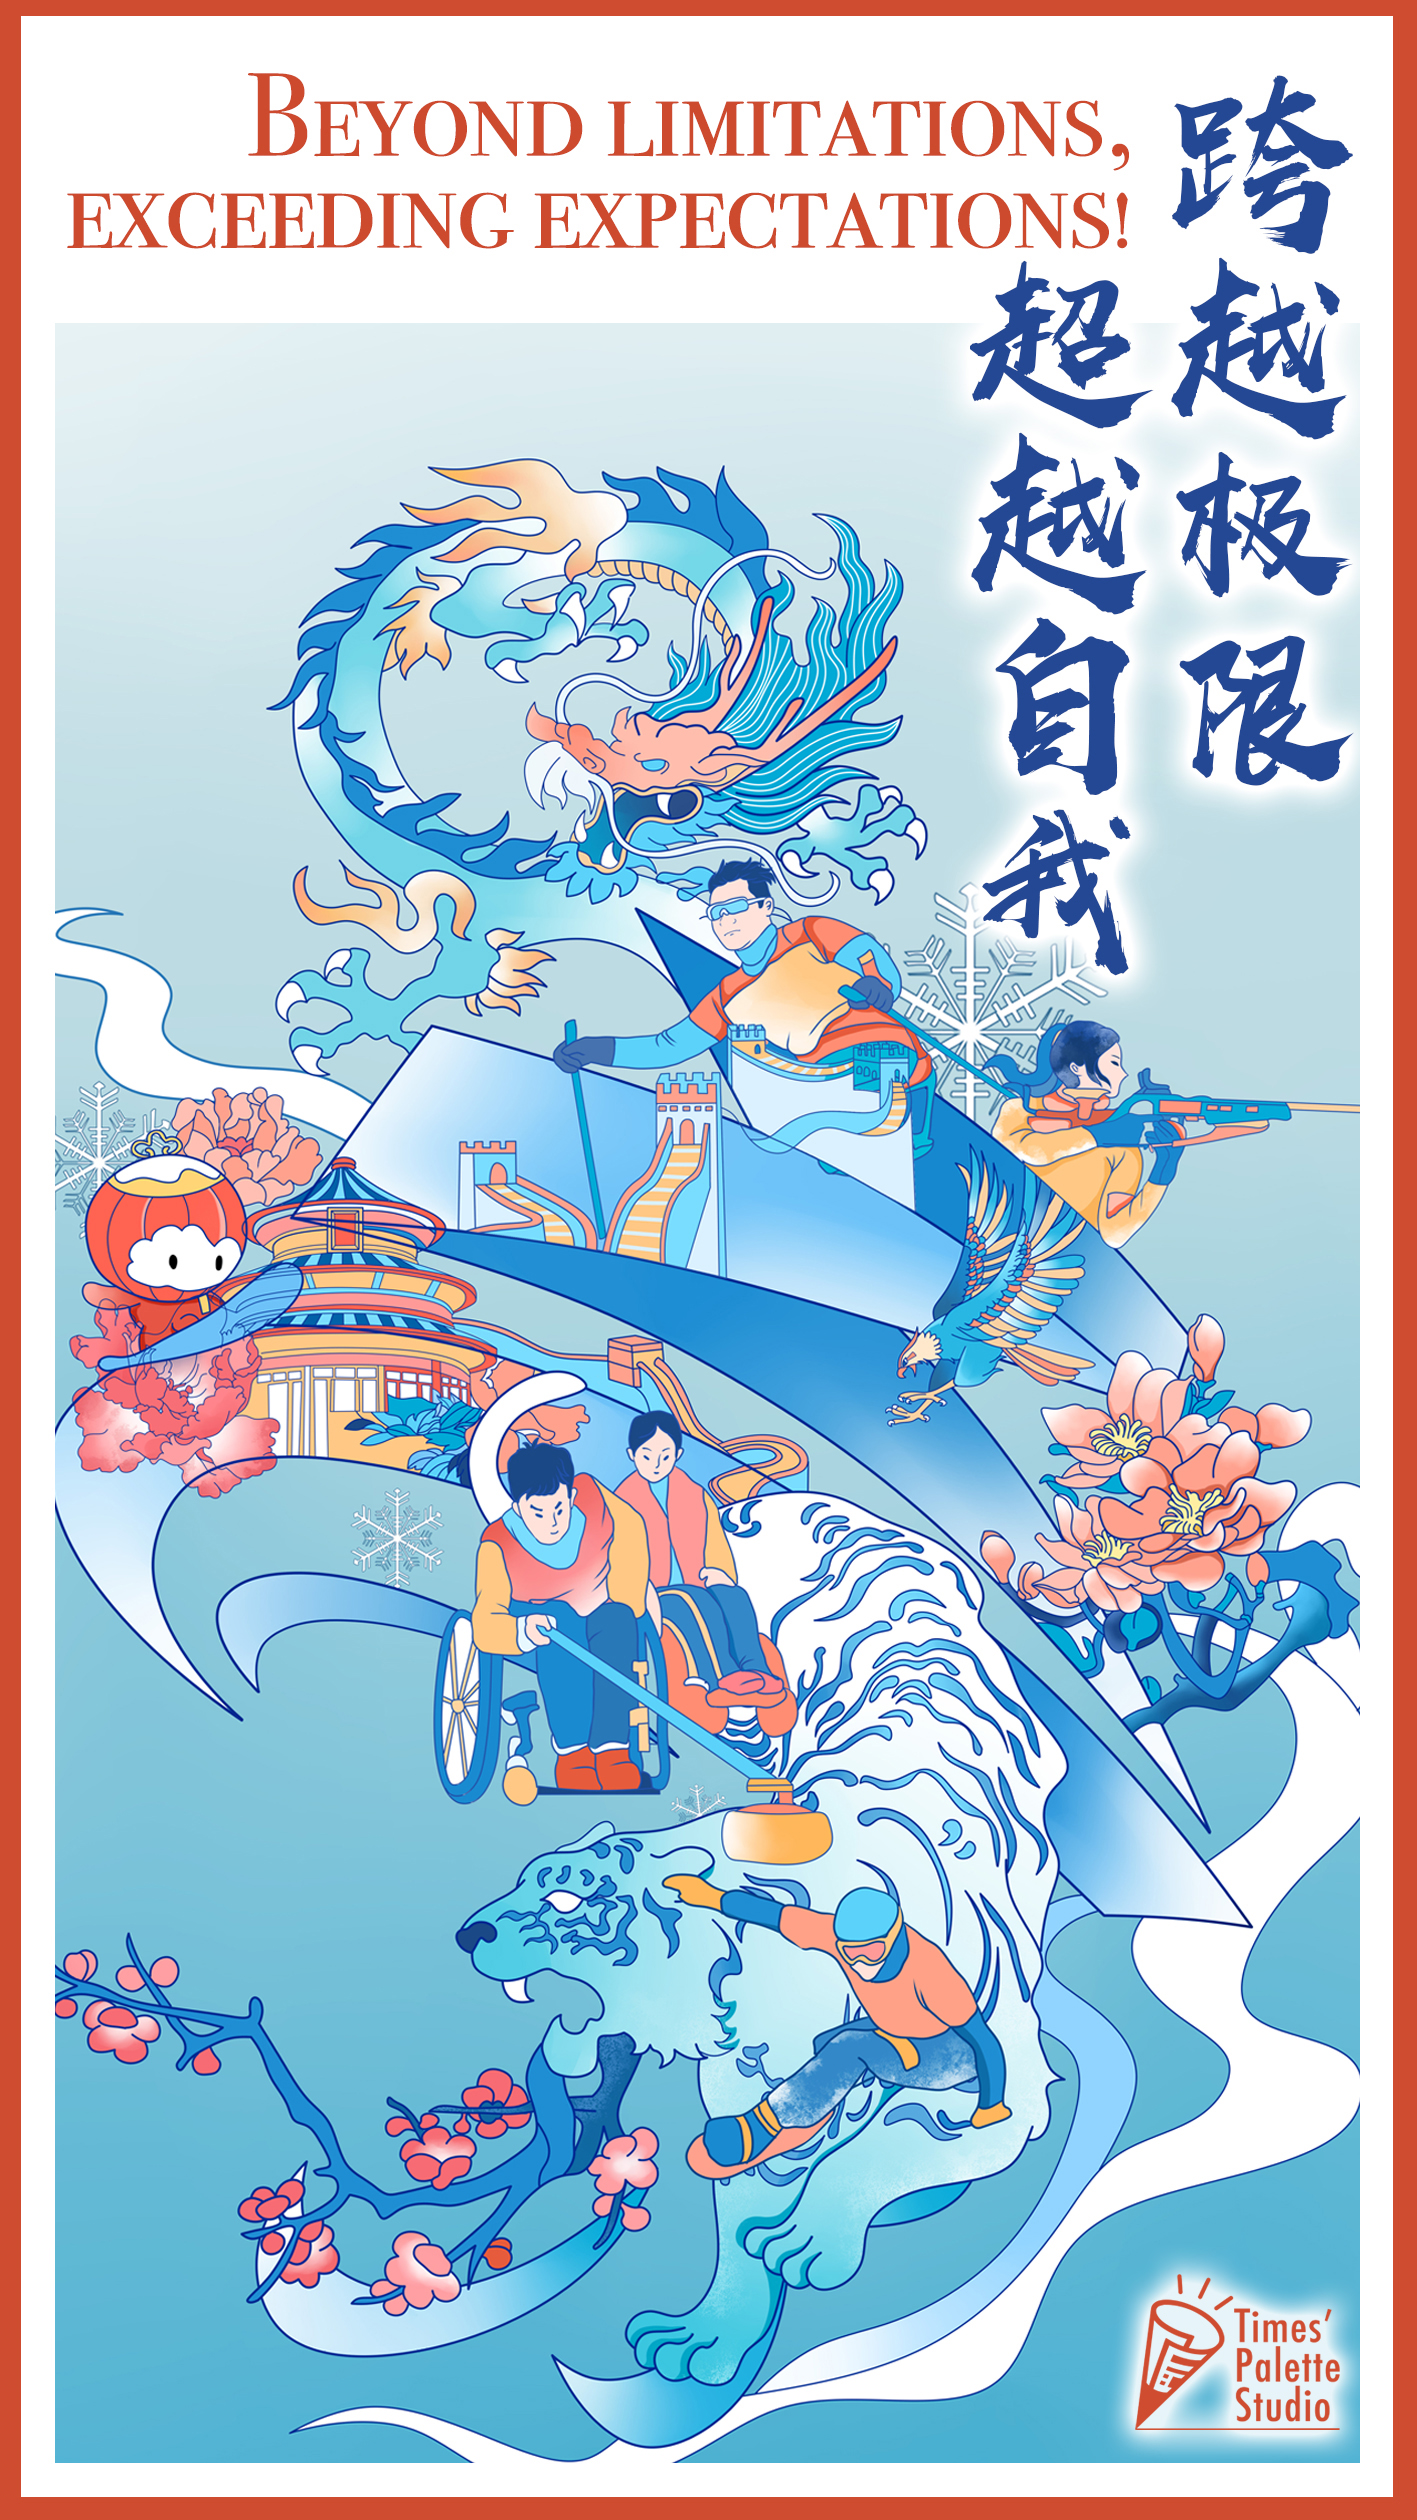 中国日报画时代工作室冬残奥会海报致敬冰雪运动员